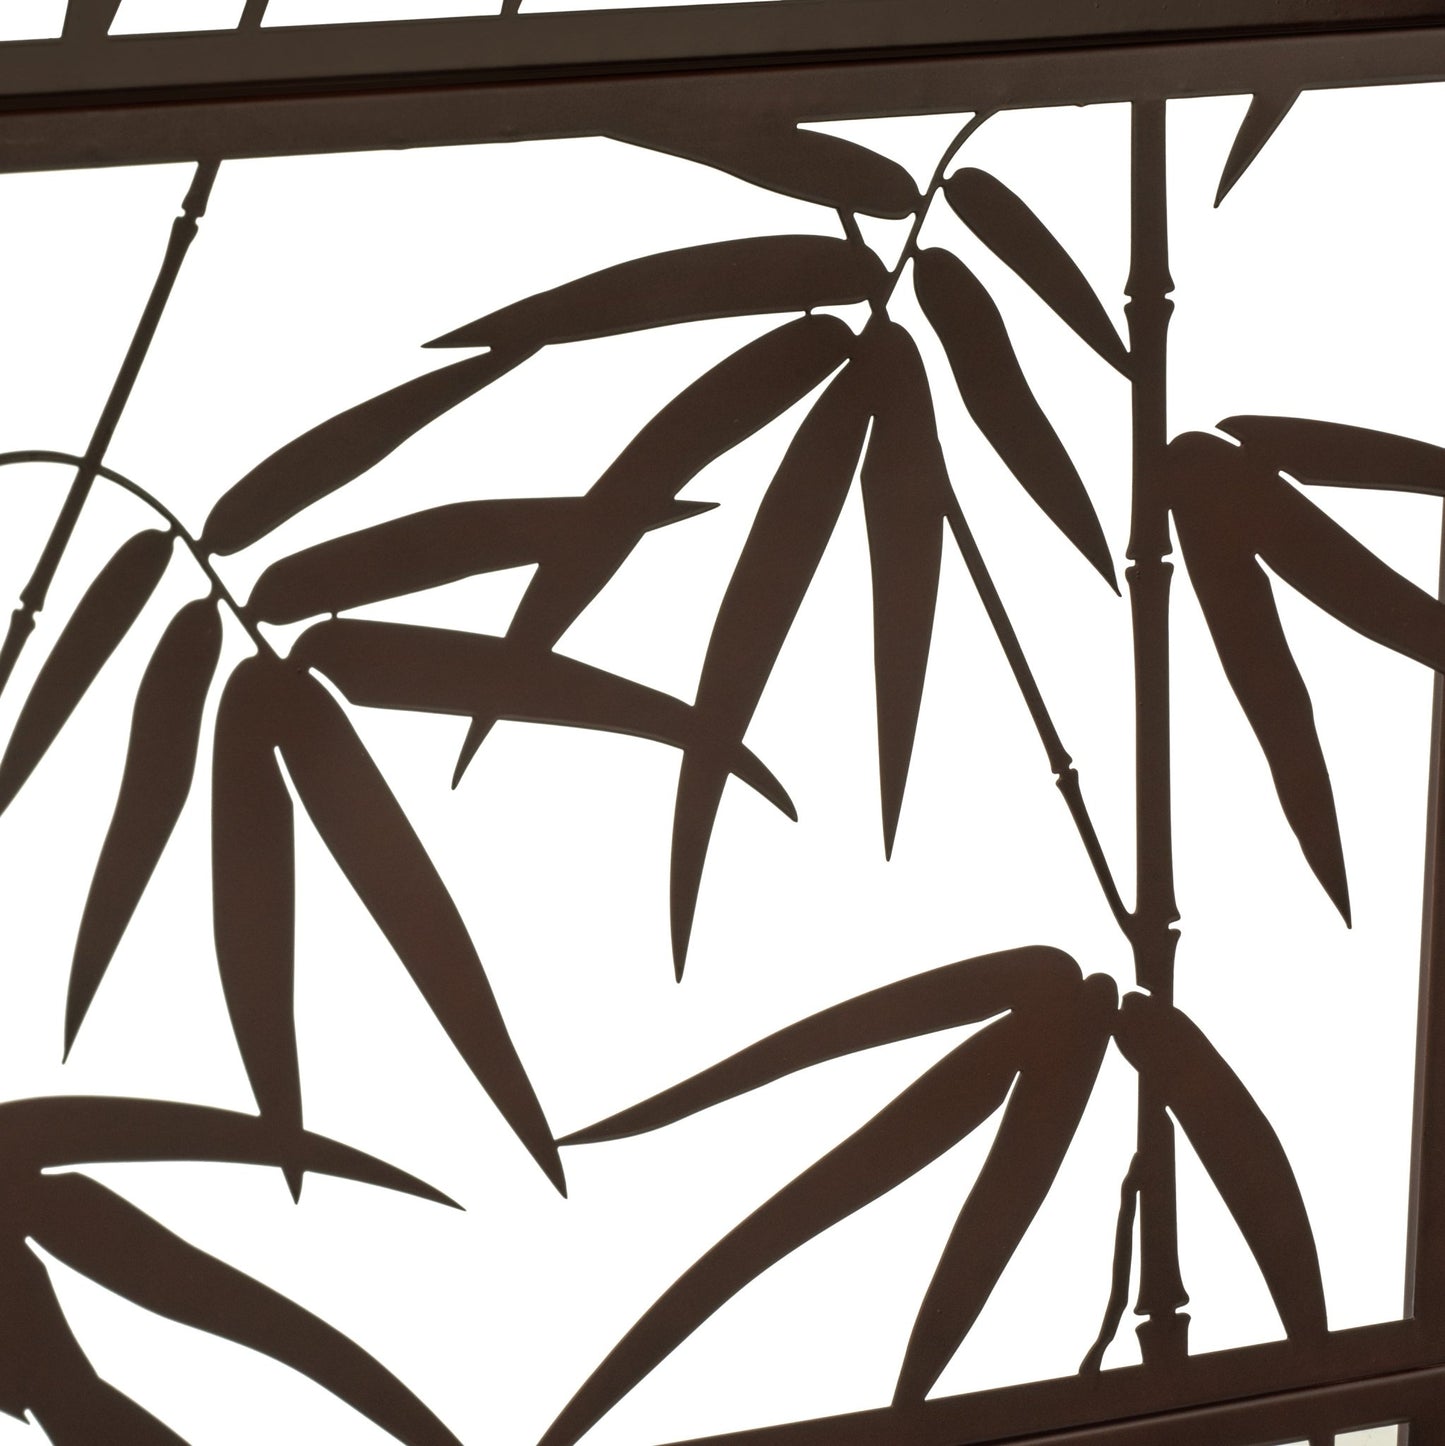 H Potter Wall Trellis Patio Deck Garden Balcony Decorative Privacy Screen